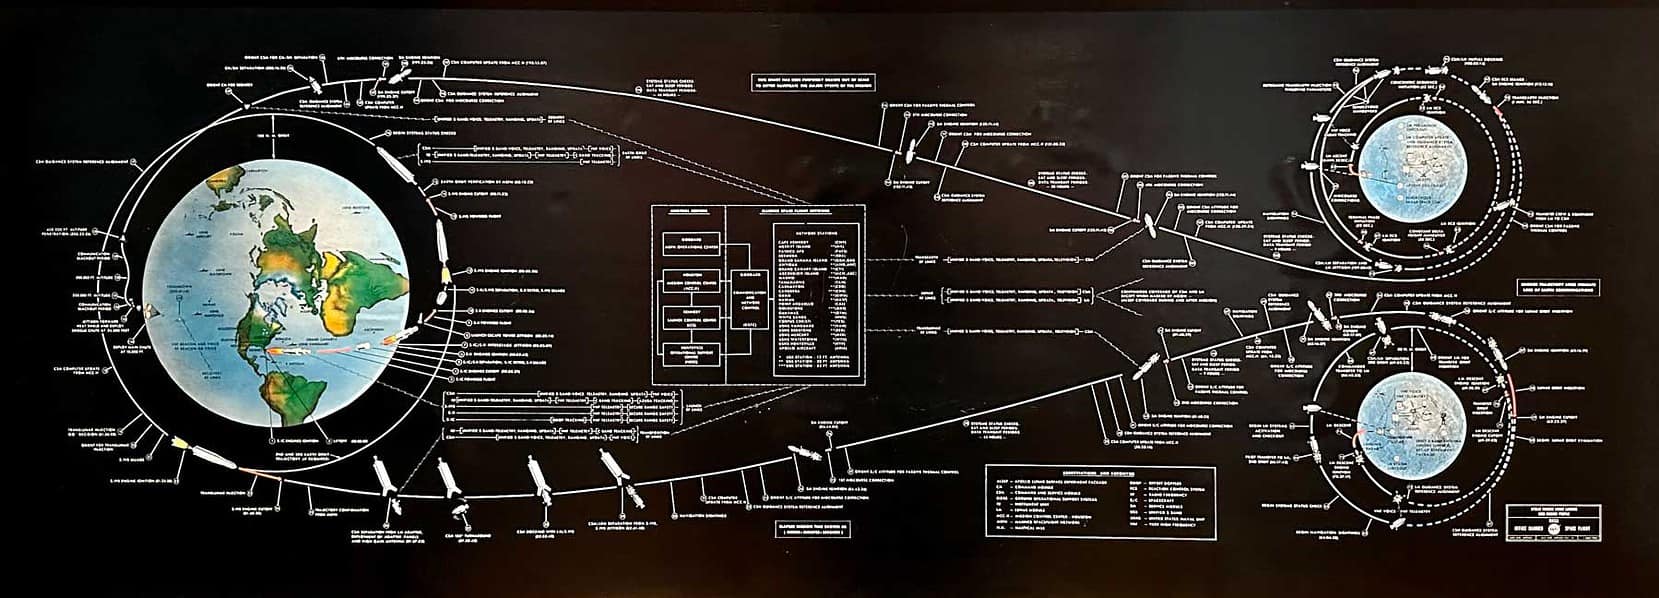 Apollo Lunar Landing Diagram